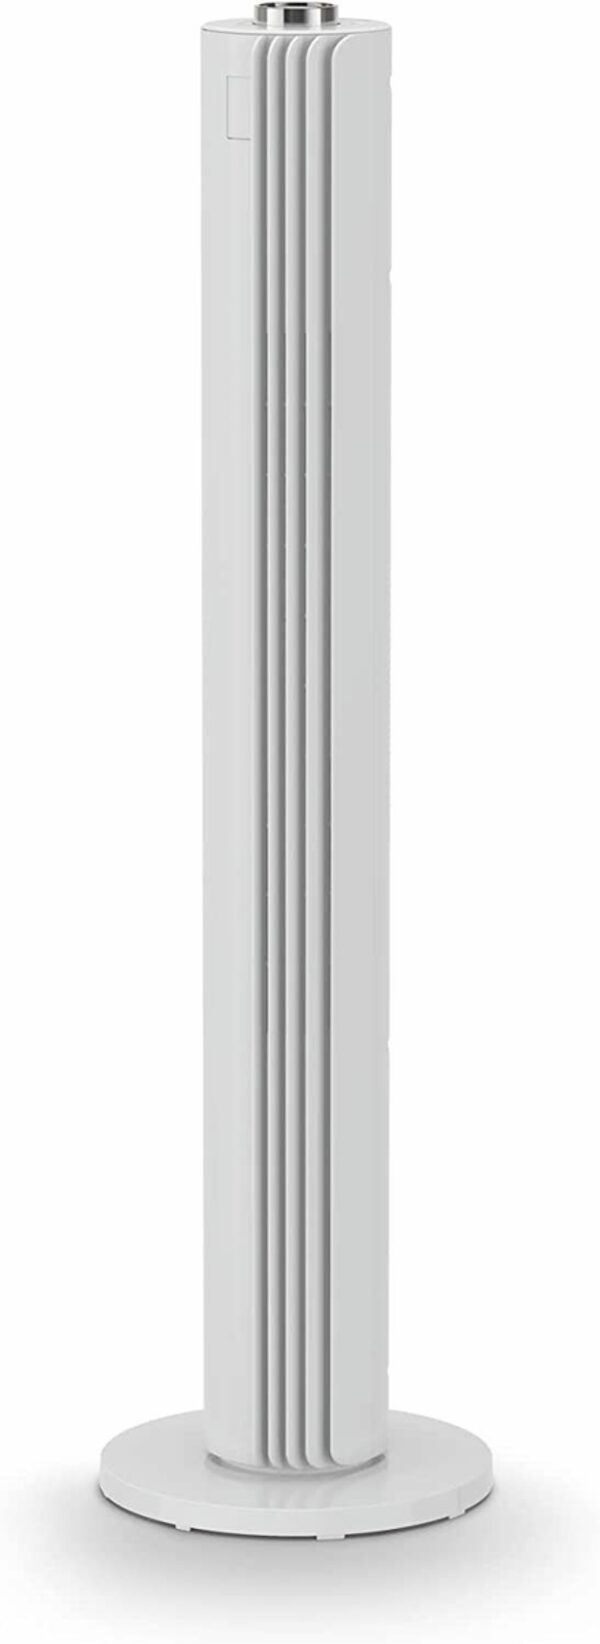 Bild 1 von Rowenta Turmventilator VU6720 Turmventilator 3 Geschwindigkeiten, leiser Nachtmodus automatische Oszillation kompakt schlankes Design